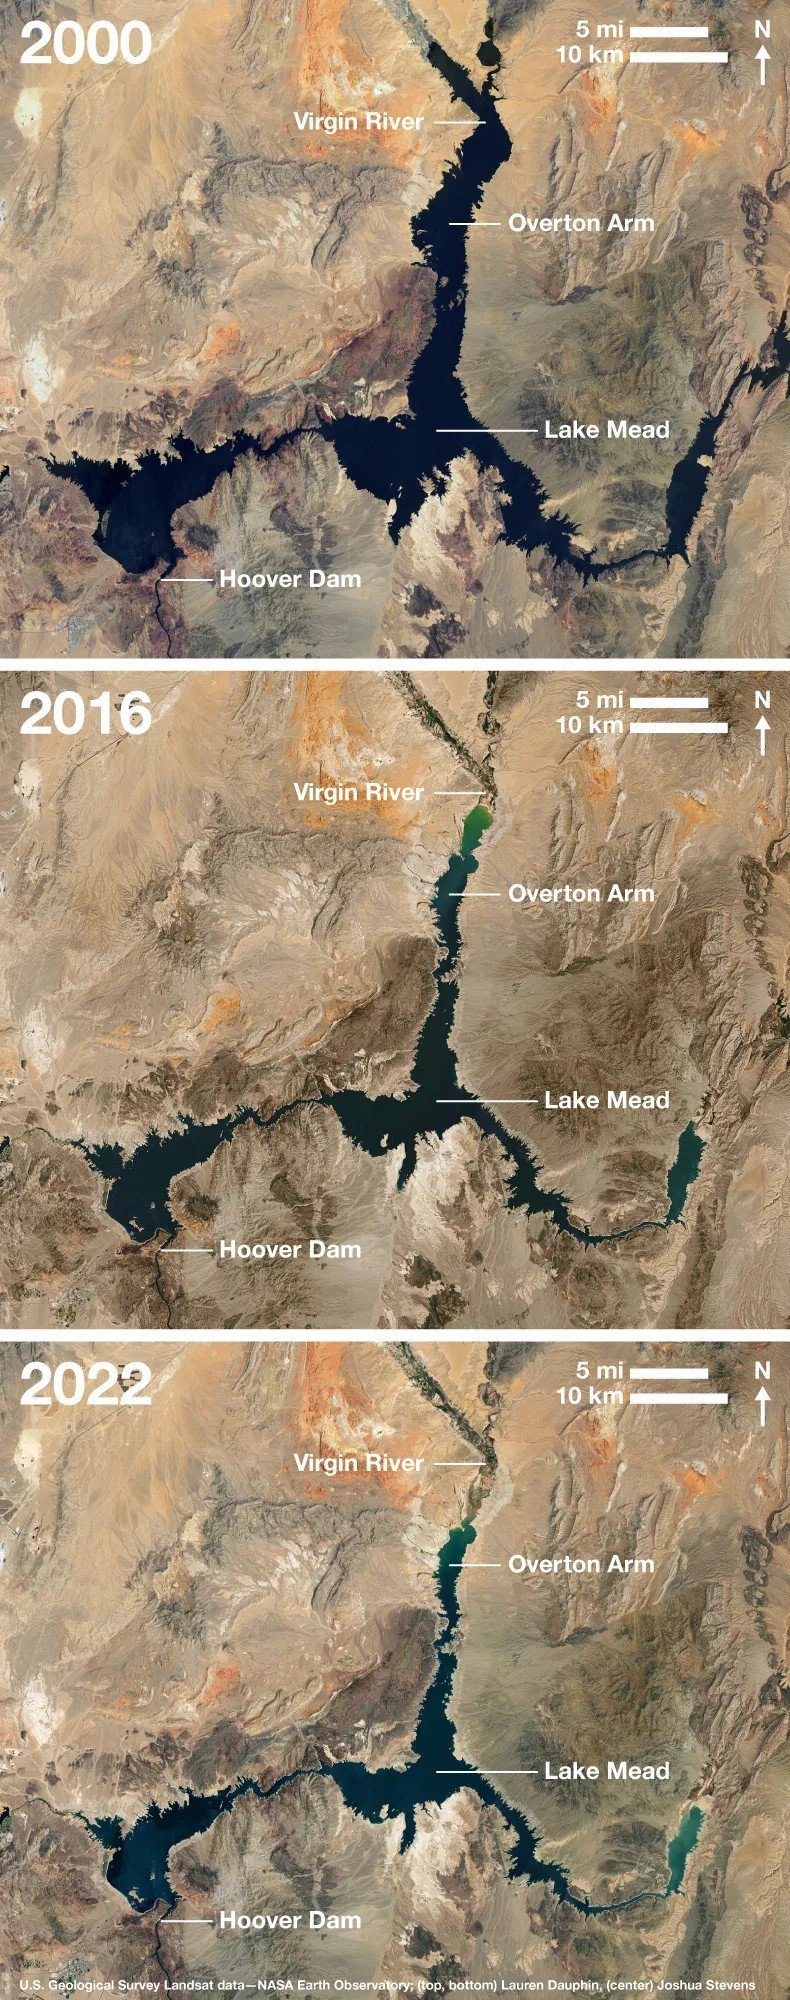 Ảnh hiển thị ảnh vệ tinh của Hồ Mead từ năm 2000 (Landsat 7), 2016 (Landsat 8) và 2022 (Landsat 8) cho thấy mực nước đang giảm dần. (Đập Hoover, Colorado, biến đổi khí hậu, môi trường). Ba hình ảnh của Hồ Mead được chụp vào năm 2000, 2016 và 2022 với các đặc điểm địa lý được gắn nhãn, bao gồm Đập Hoover, Overton Arm và Sông Virgin. Ảnh: U.S. Geological Survey Landsat data—NASA Earth Observatory; (left, right) Lauren Dauphin, (center) Joshua Stevens